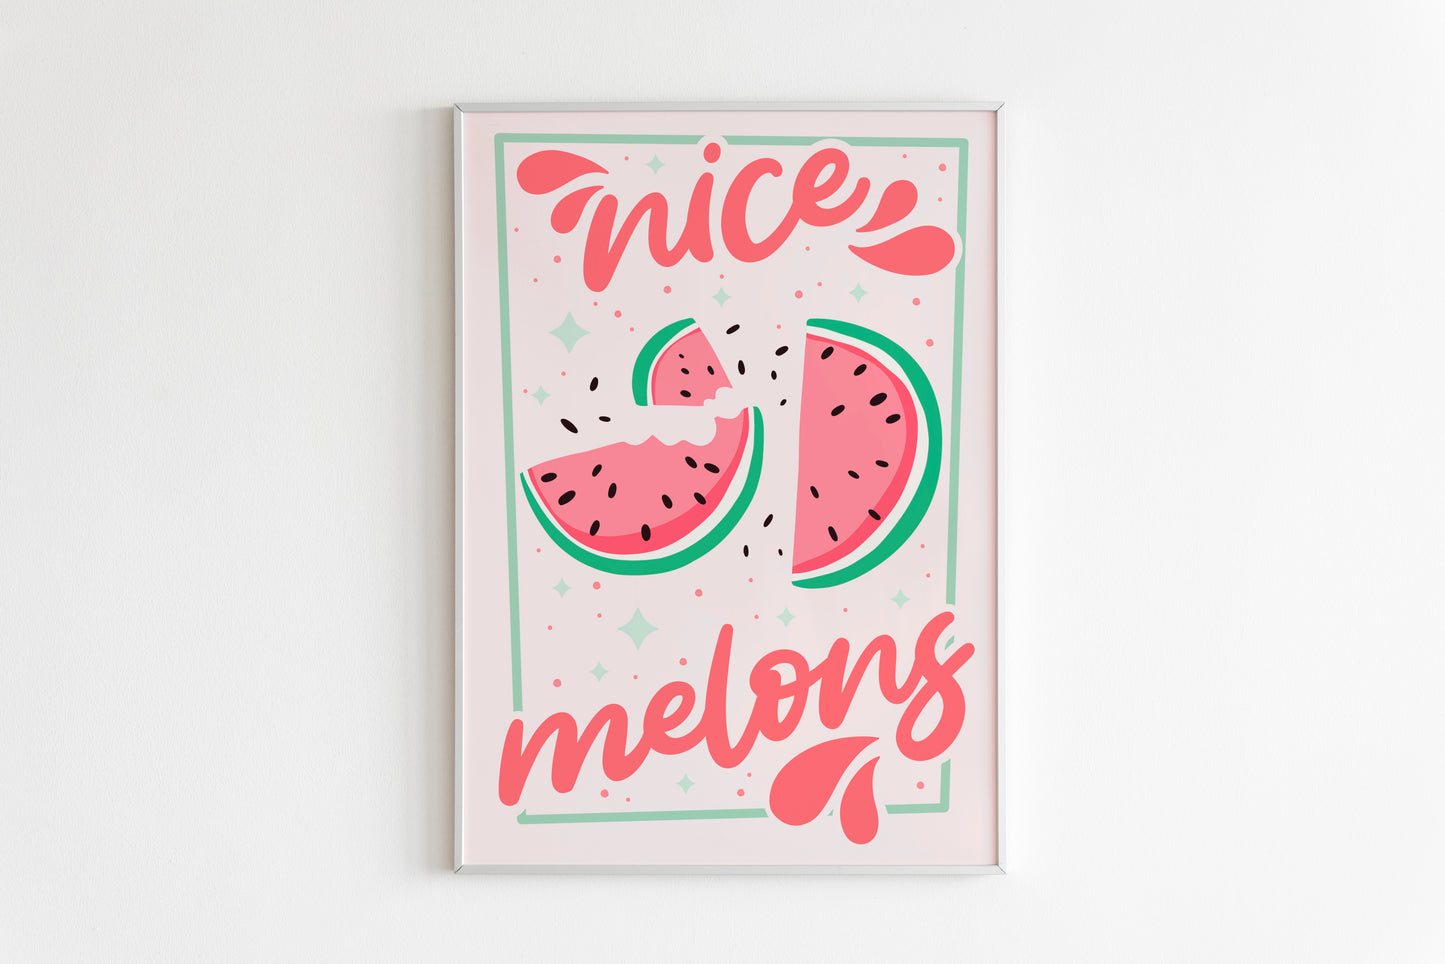 Nice Melons Print